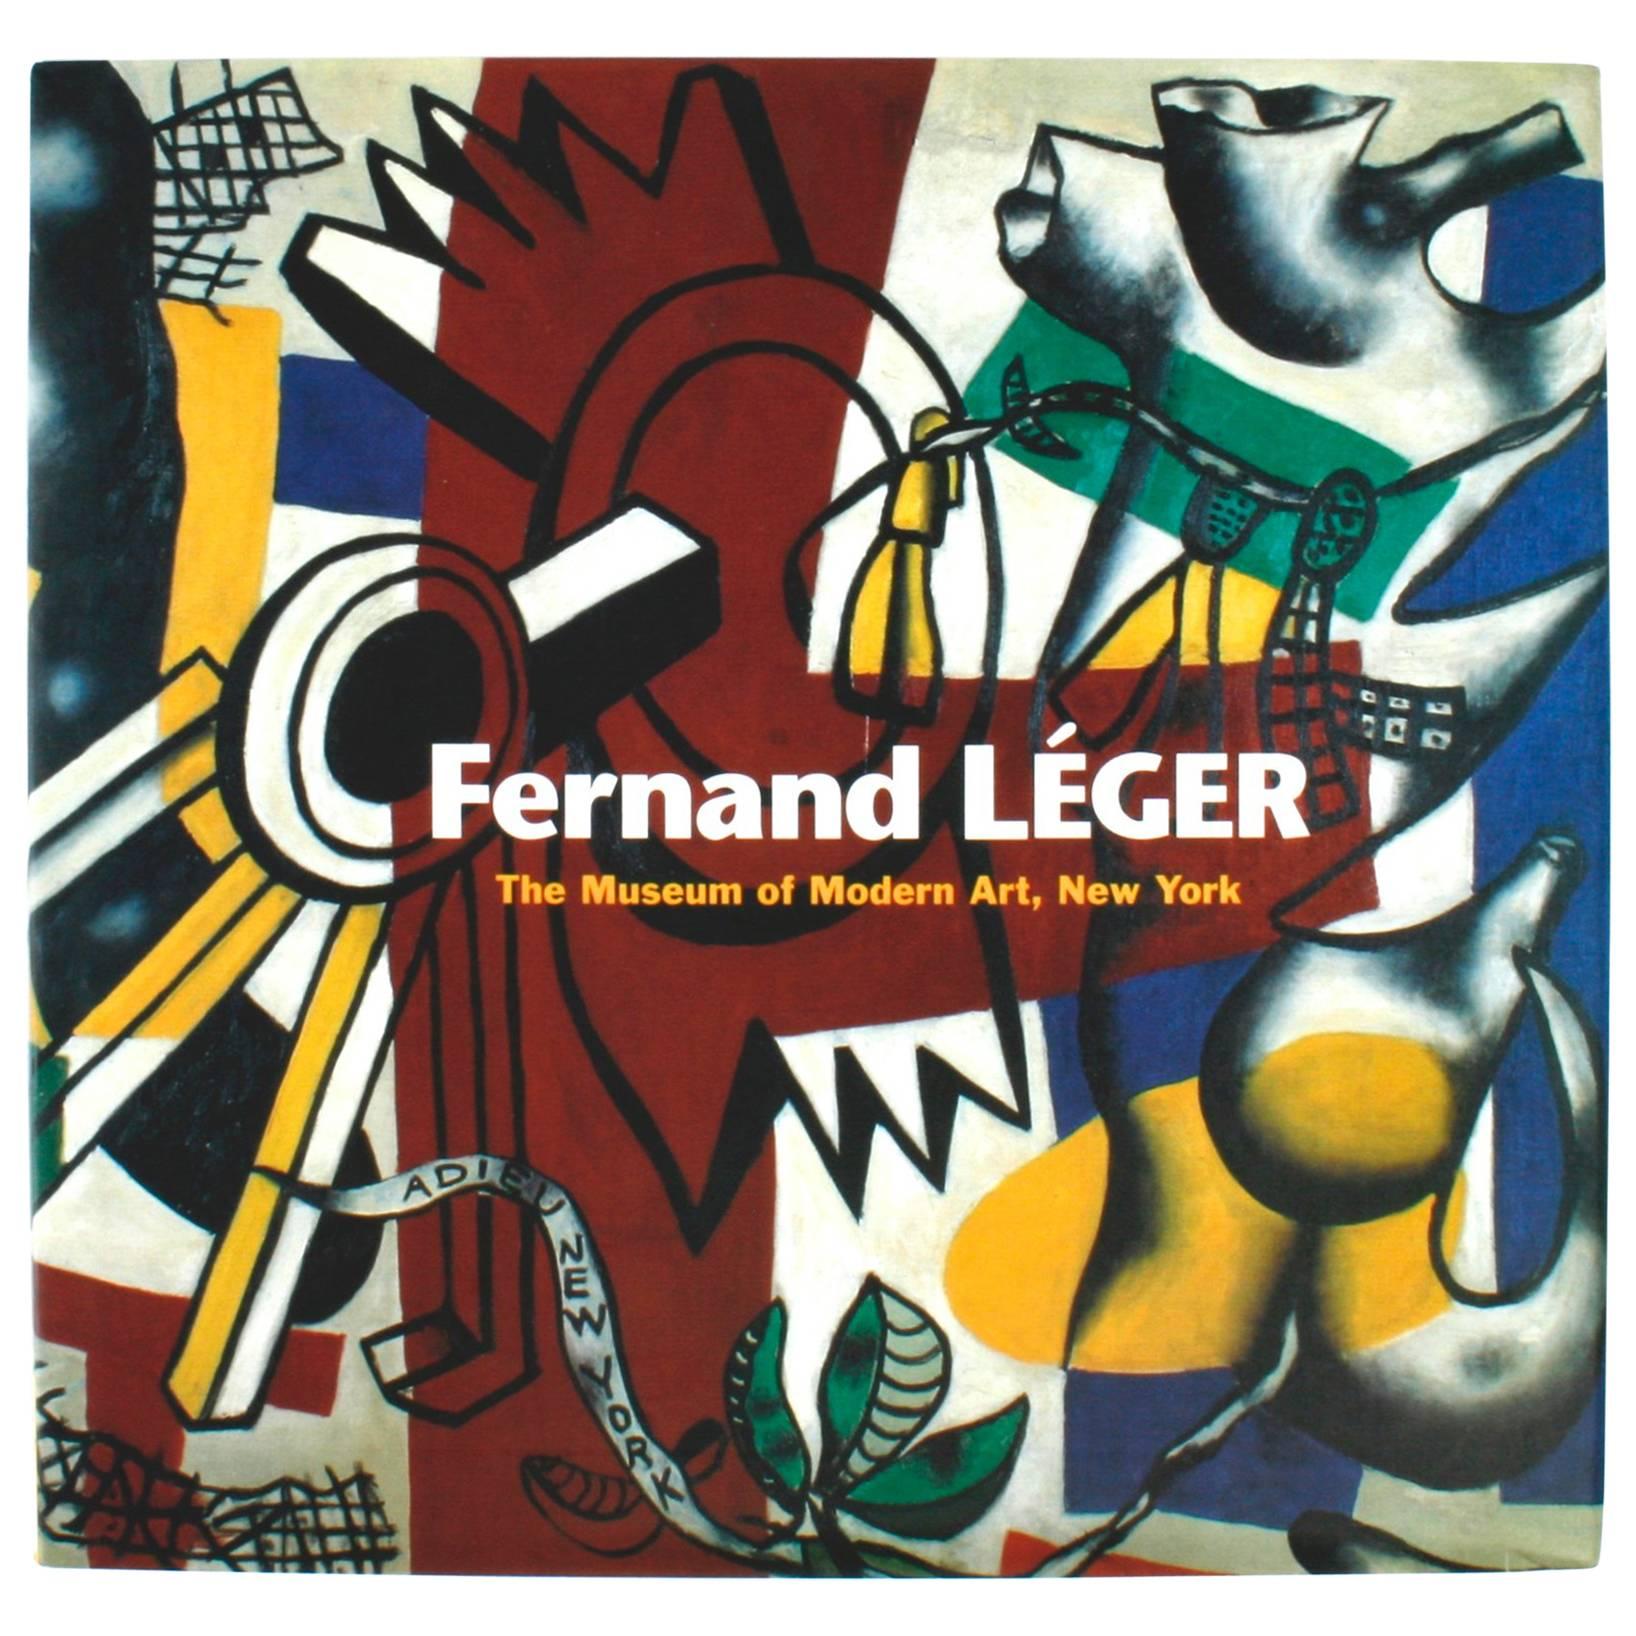 Fernand Léger, The Museum of Modern Art, New York, 1st Modern